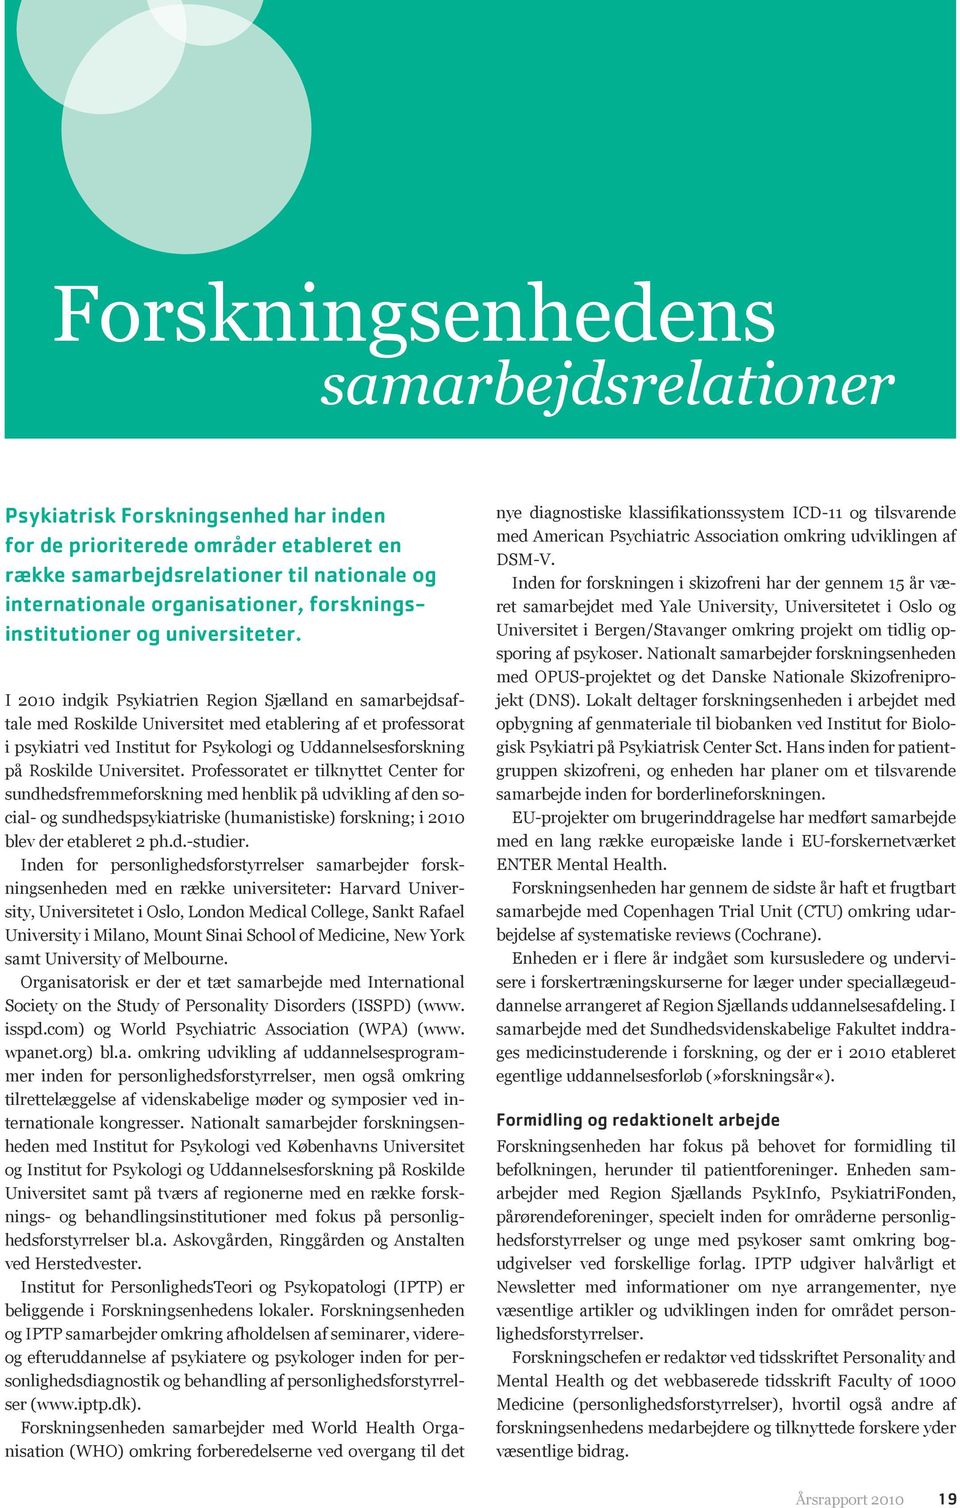 I 2010 indgik Psykiatrien Region Sjælland en samarbejdsaftale med Roskilde Universitet med etablering af et professorat i psykiatri ved Institut for Psykologi og Uddannelsesforskning på Roskilde